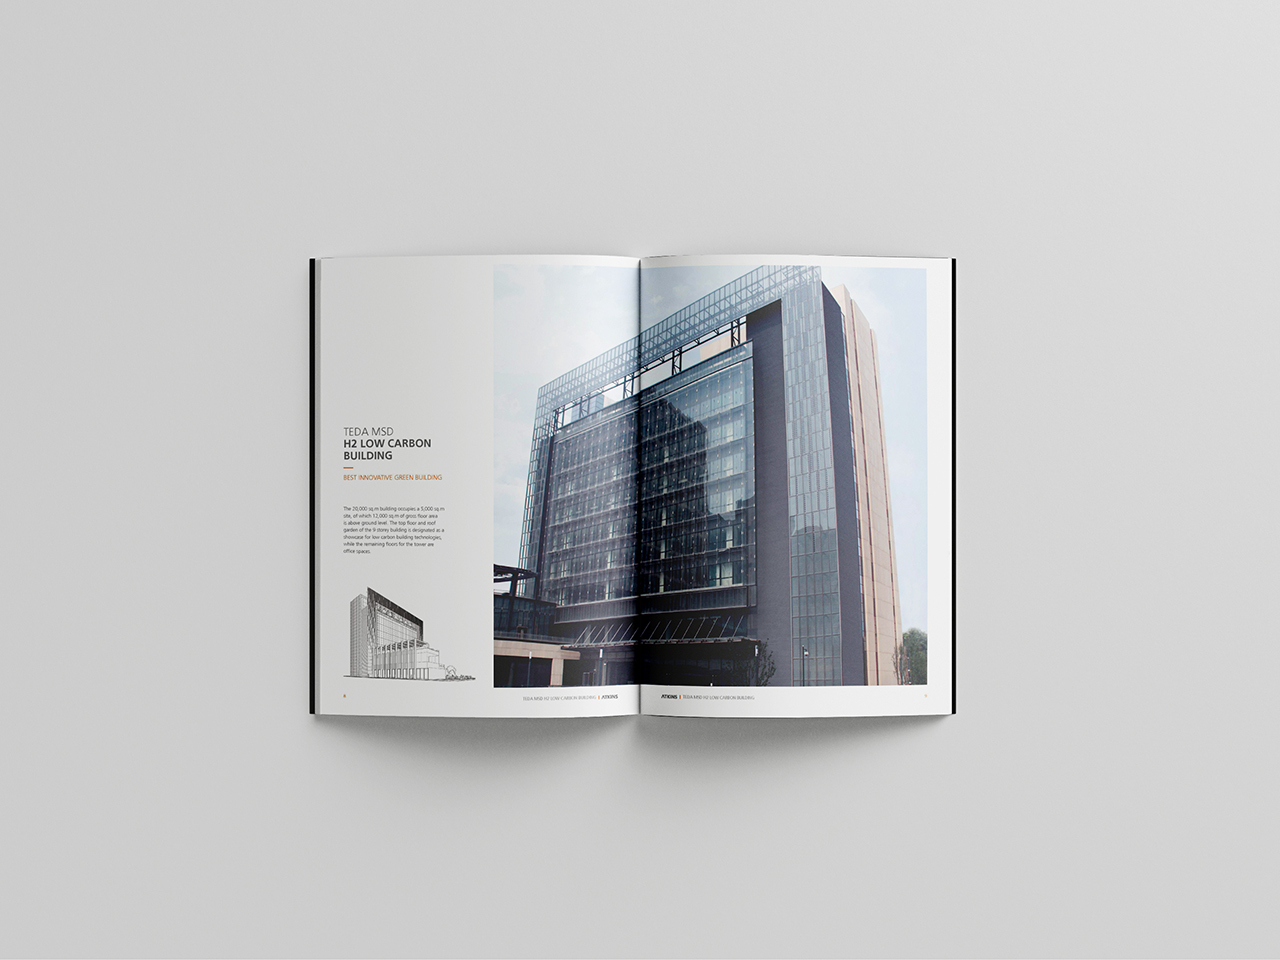 国际建筑品牌 设计竞赛项目宣传册设计图4